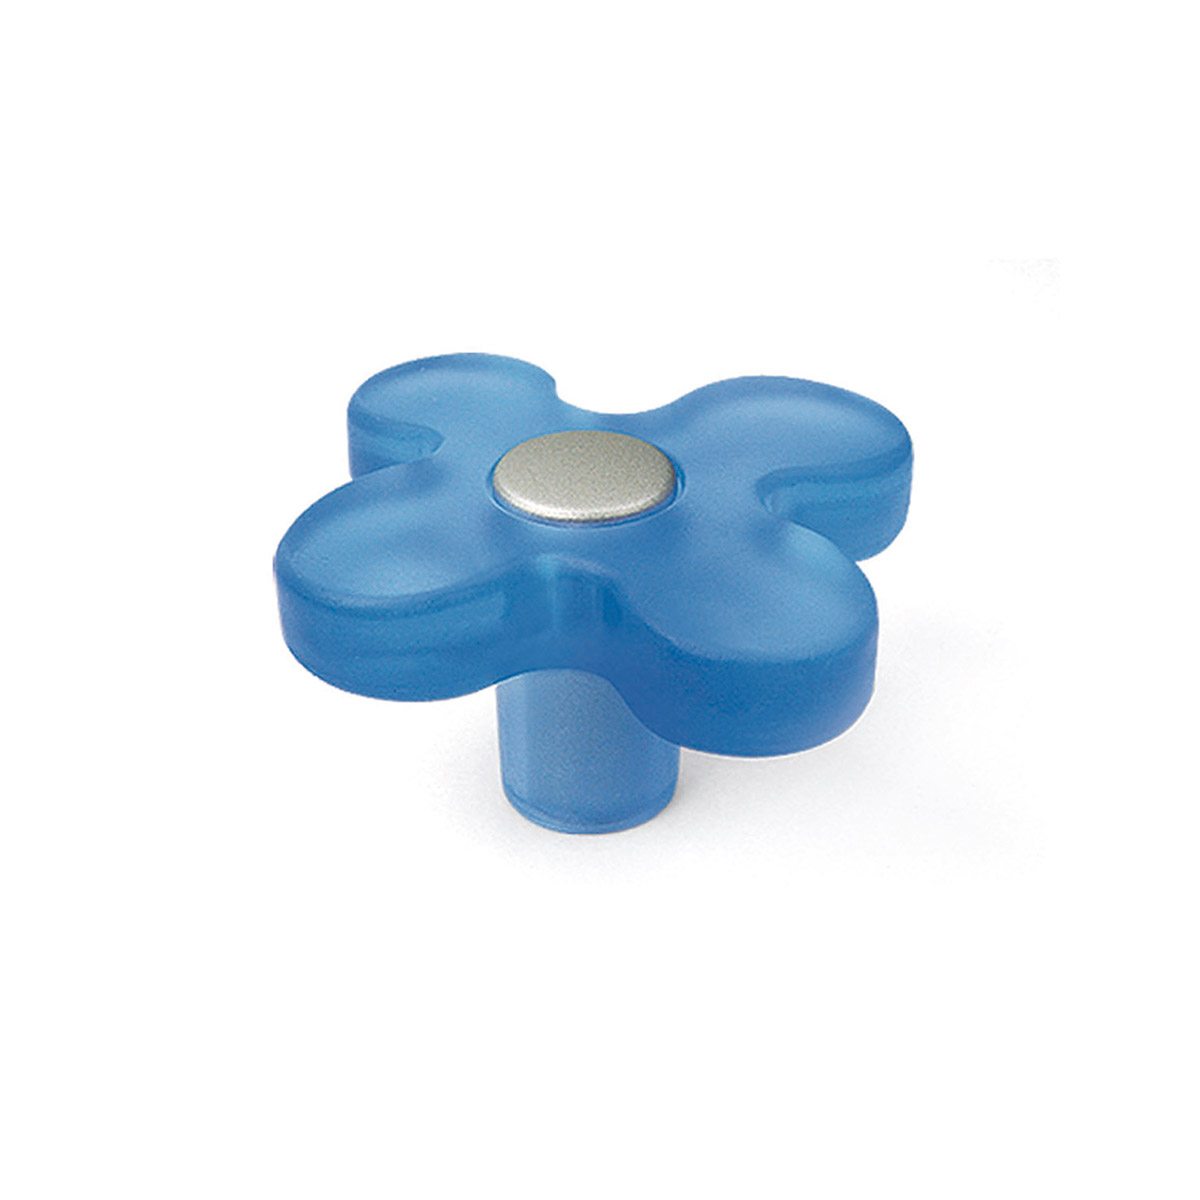 Blister con 6 pomos de plástico con acabado azul, dimensiones: 49x49x26mm ø: 49mm